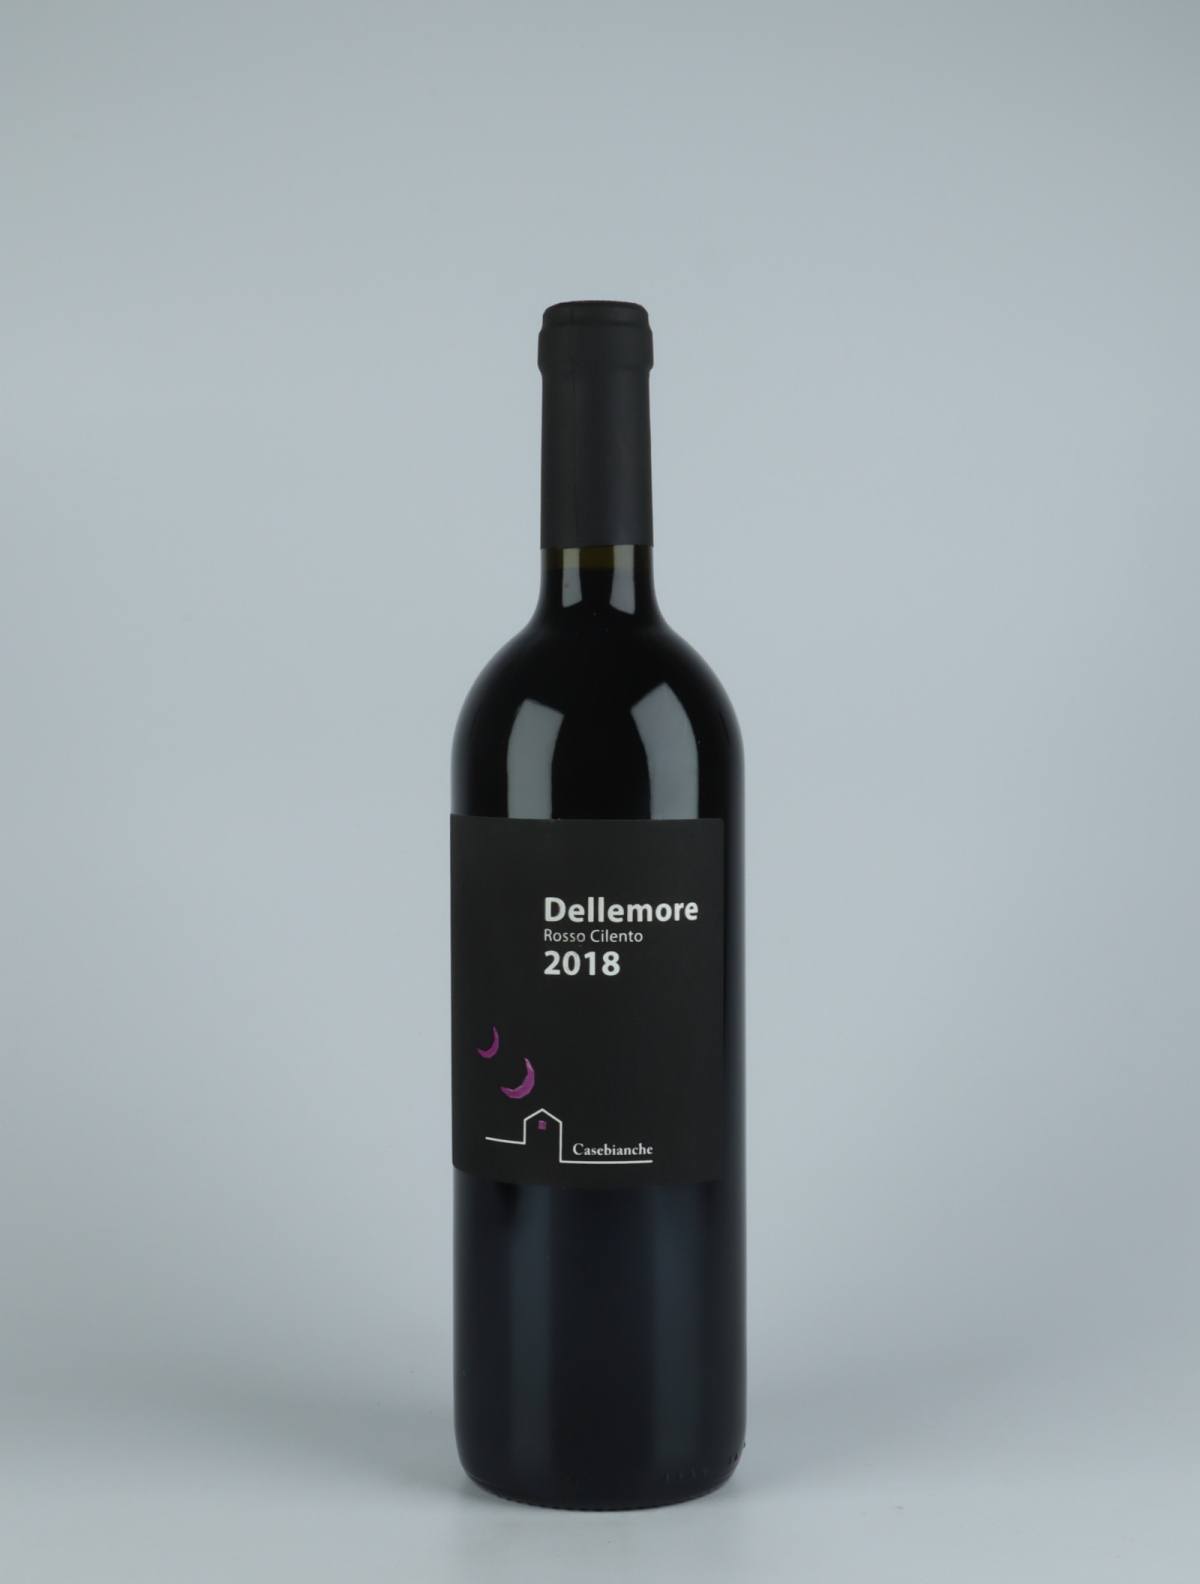 En flaske 2018 Dellemore Rødvin fra Casebianche, Campanien i Italien